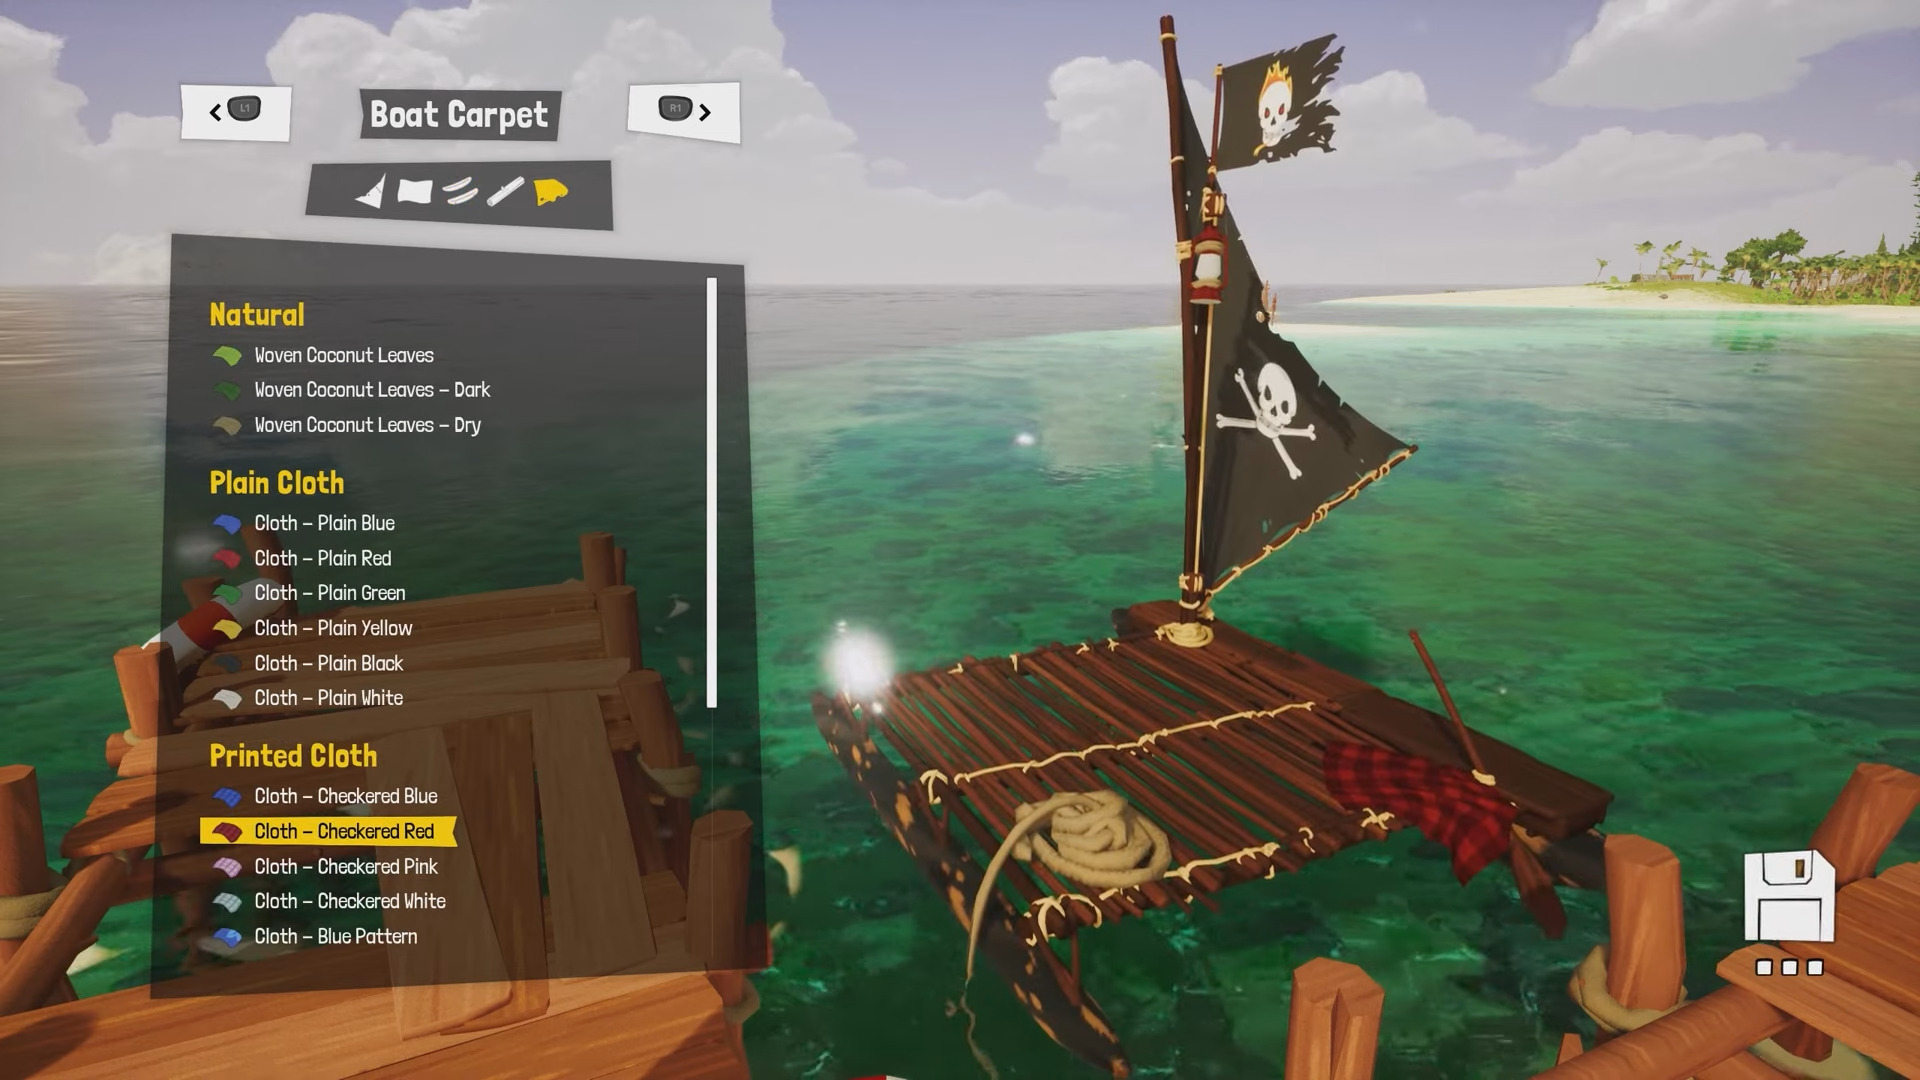 Awaceb ha parlato della personalizzazione del personaggio in Tchia. I giocatori potranno cercare abiti diversi, creare la propria barca e avere una macchina fotografica nel proprio arsenale. -10